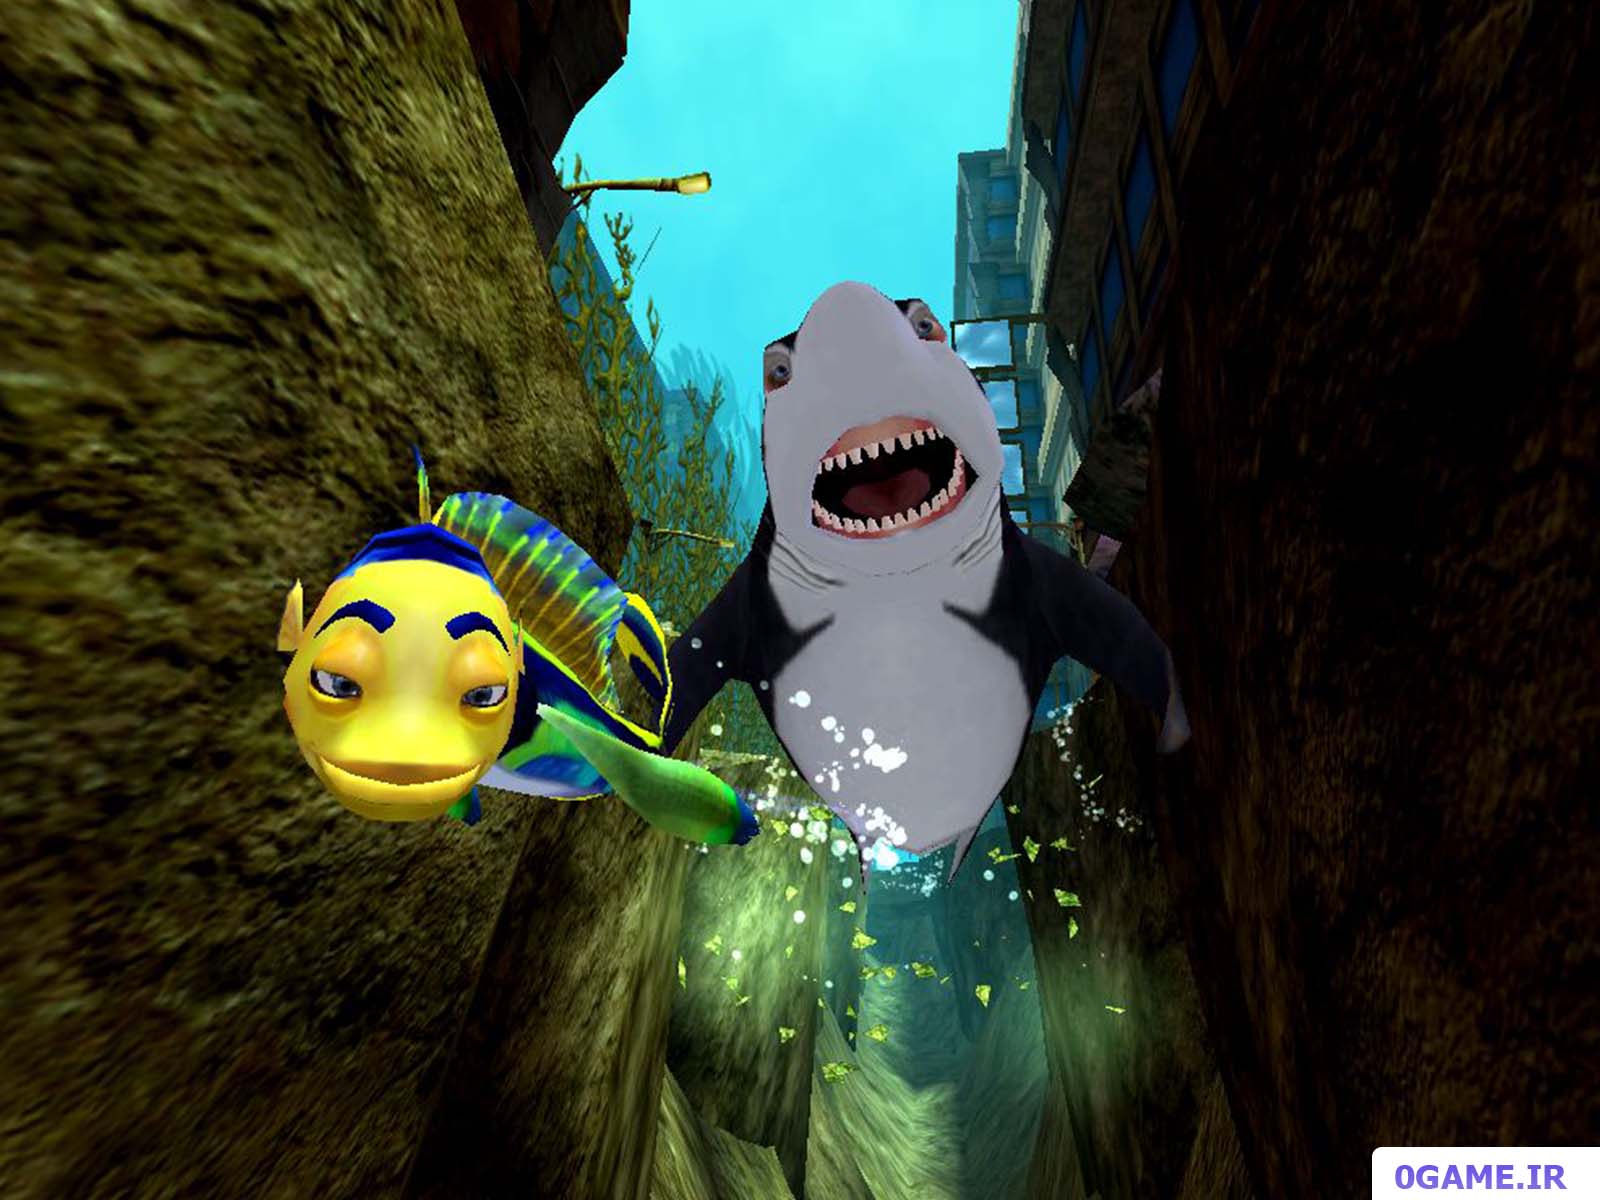 دانلود بازی داستان کوسه (Shark Tale) نسخه کامل برای کامپیوتر